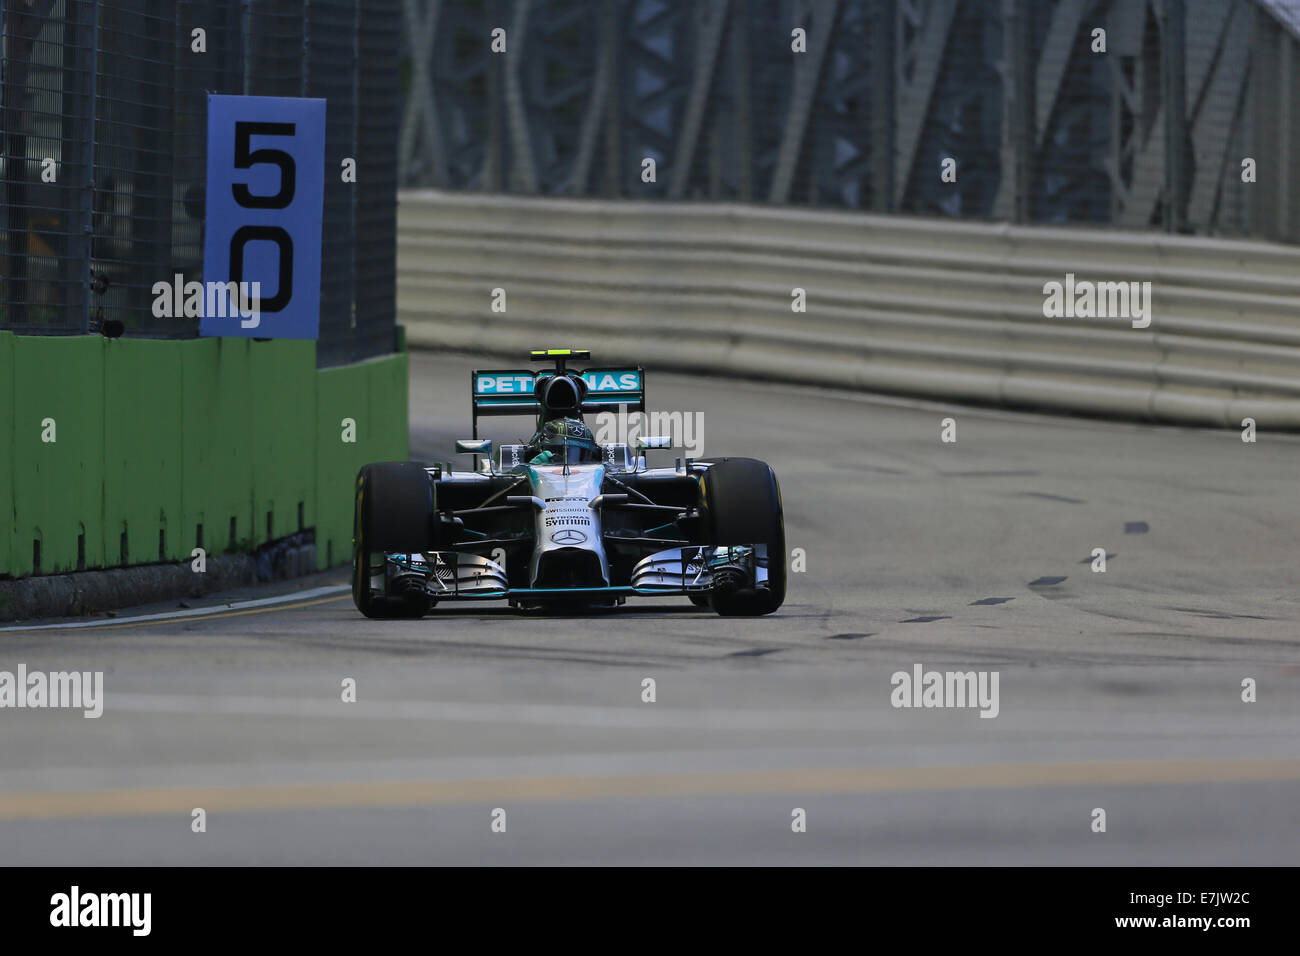 Singapur, Marina Bay Street Circuit. 19. Sep, 2014. Formel 1 Grand Prix Singapur. Nico Rosberg von Mercedes findet auf der Rennstrecke während Freitag Training Credit: Action Plus Sport/Alamy Live News Stockfoto